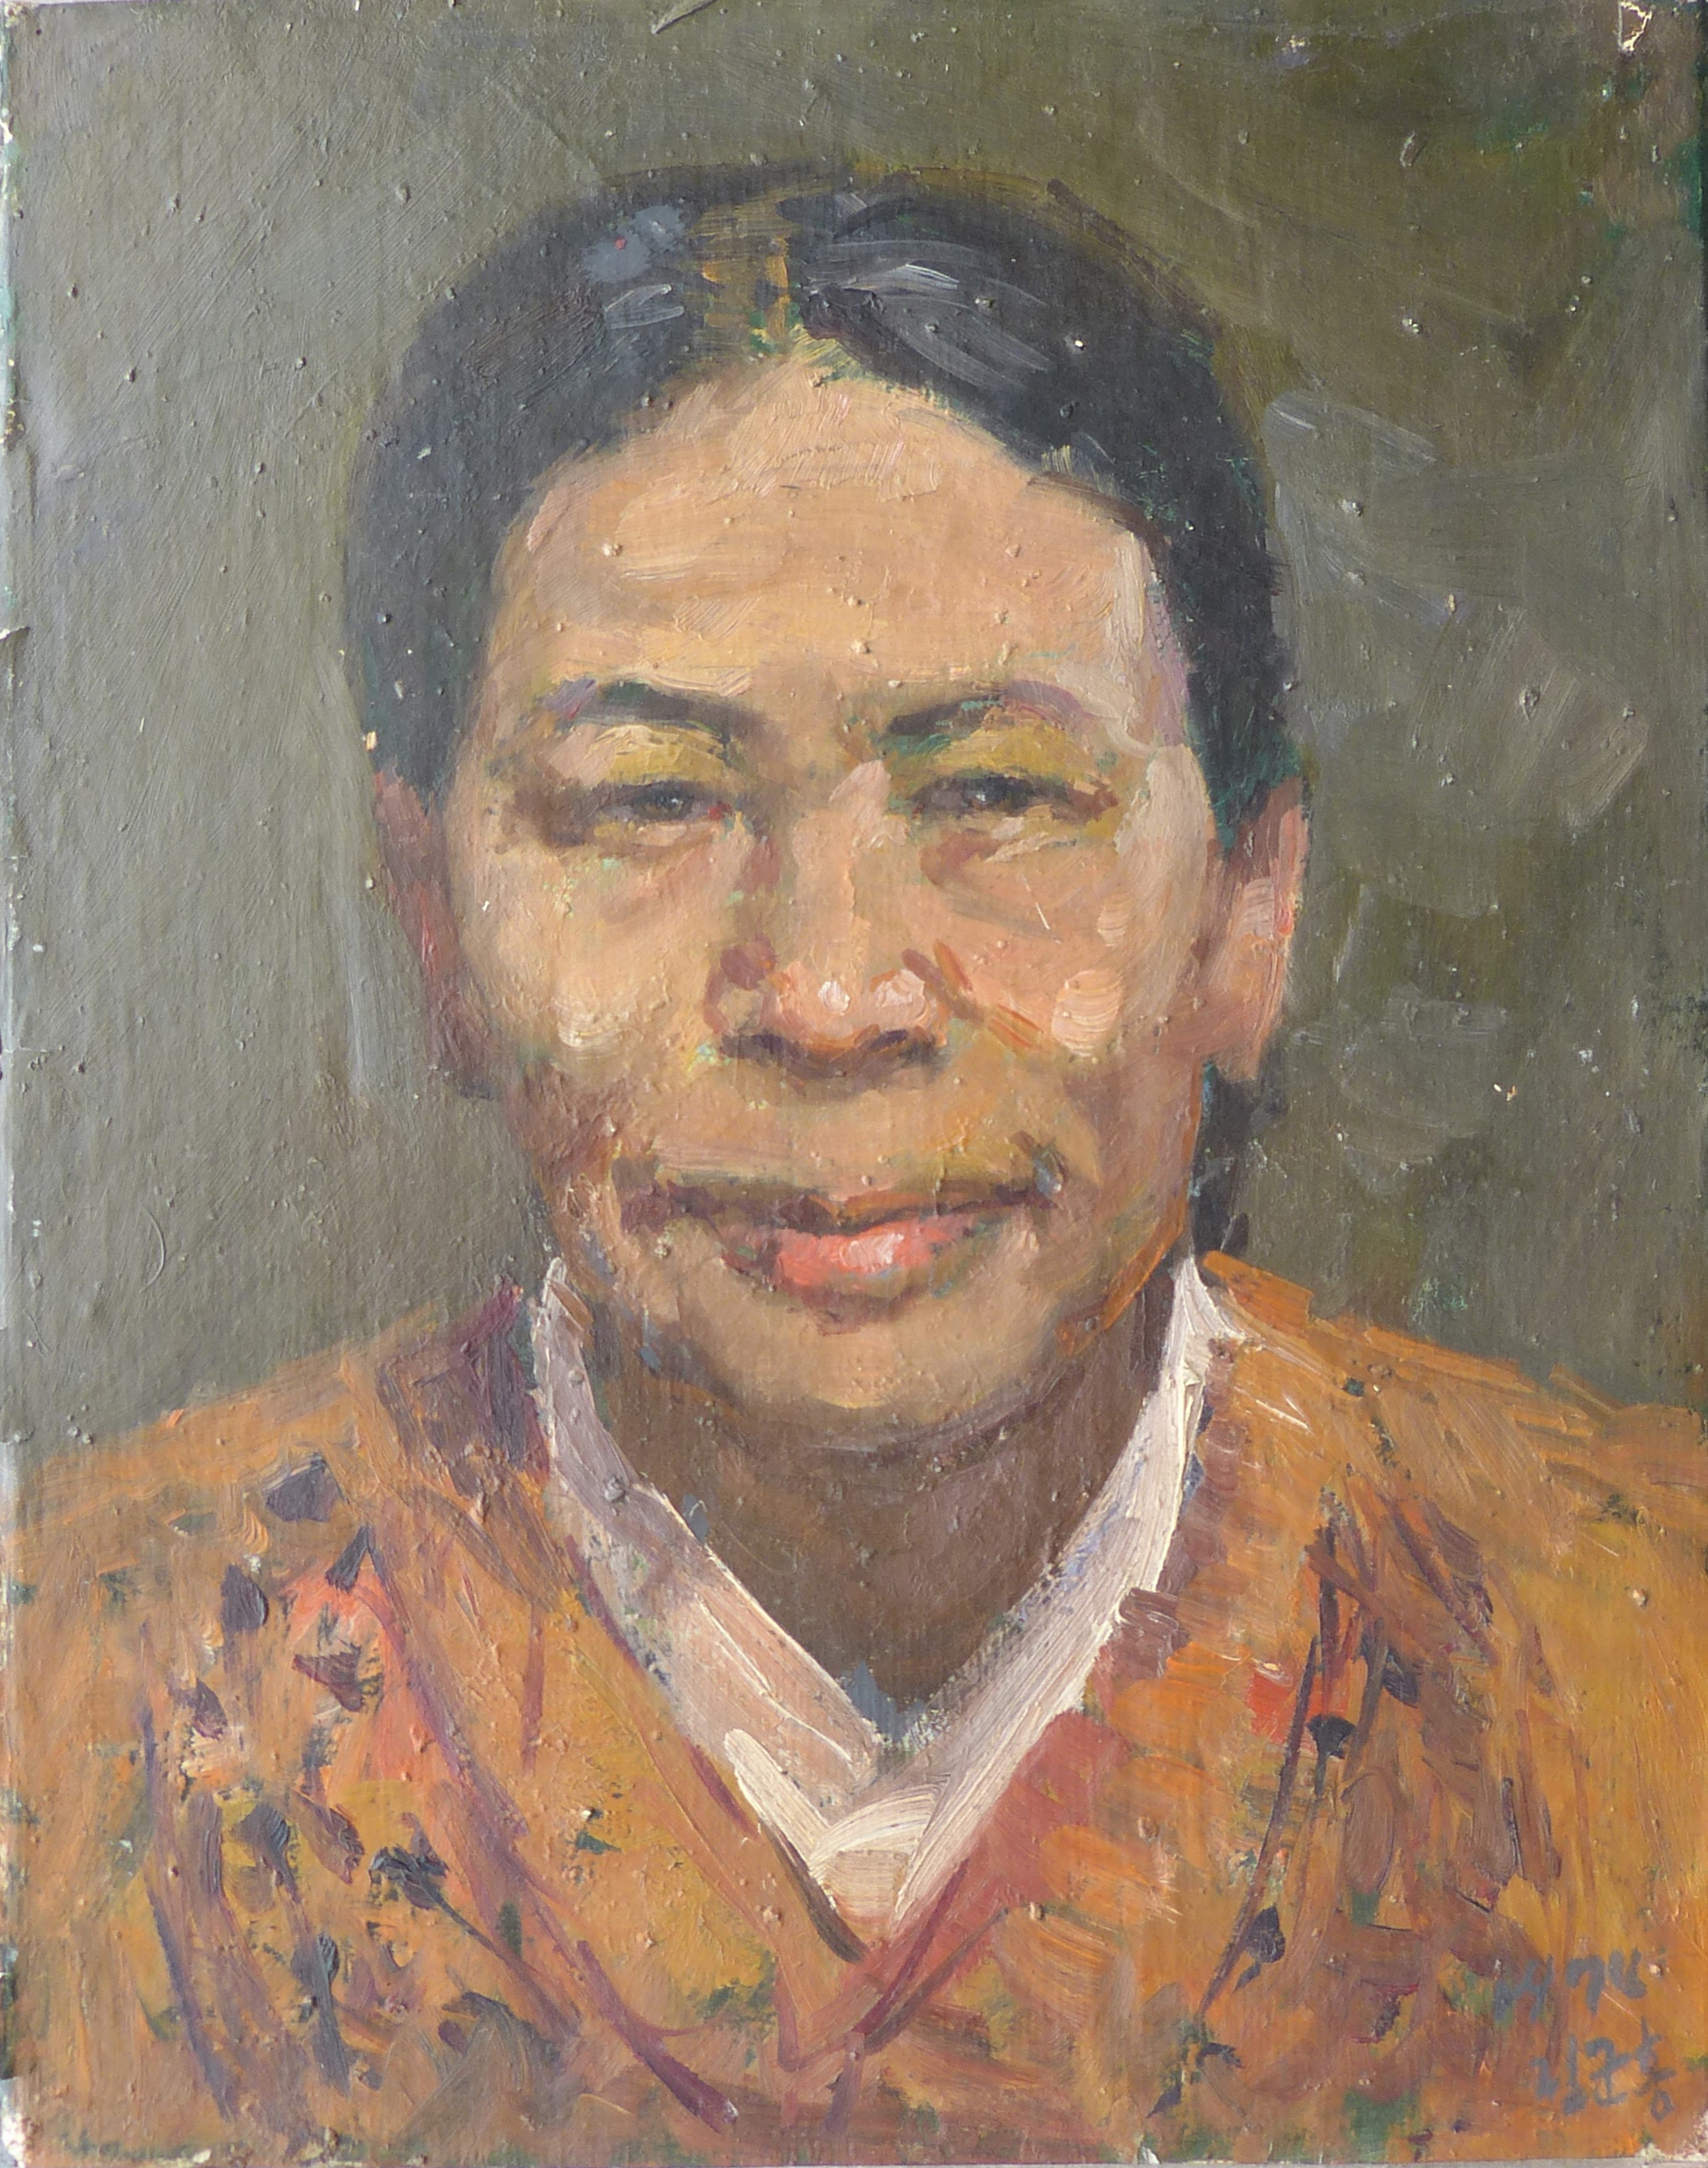 【朝鲜油画】林君鸿 朴京兰画像 1974年 25 x 32cm